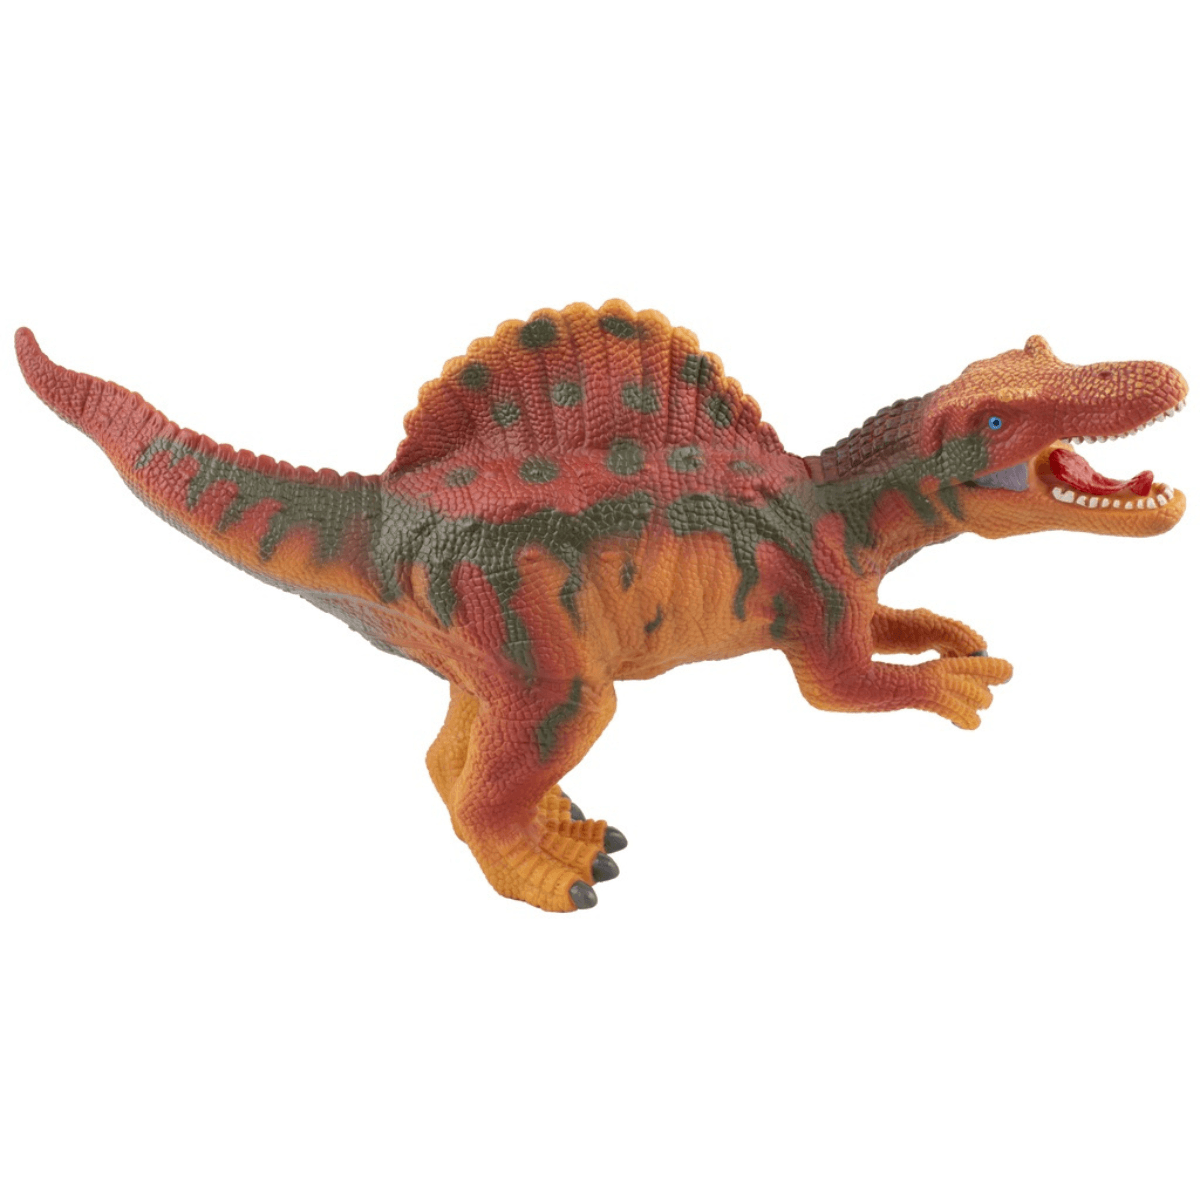 Quebra Cabeça 2000 Peças Dinossauros - Bumerang Brinquedos